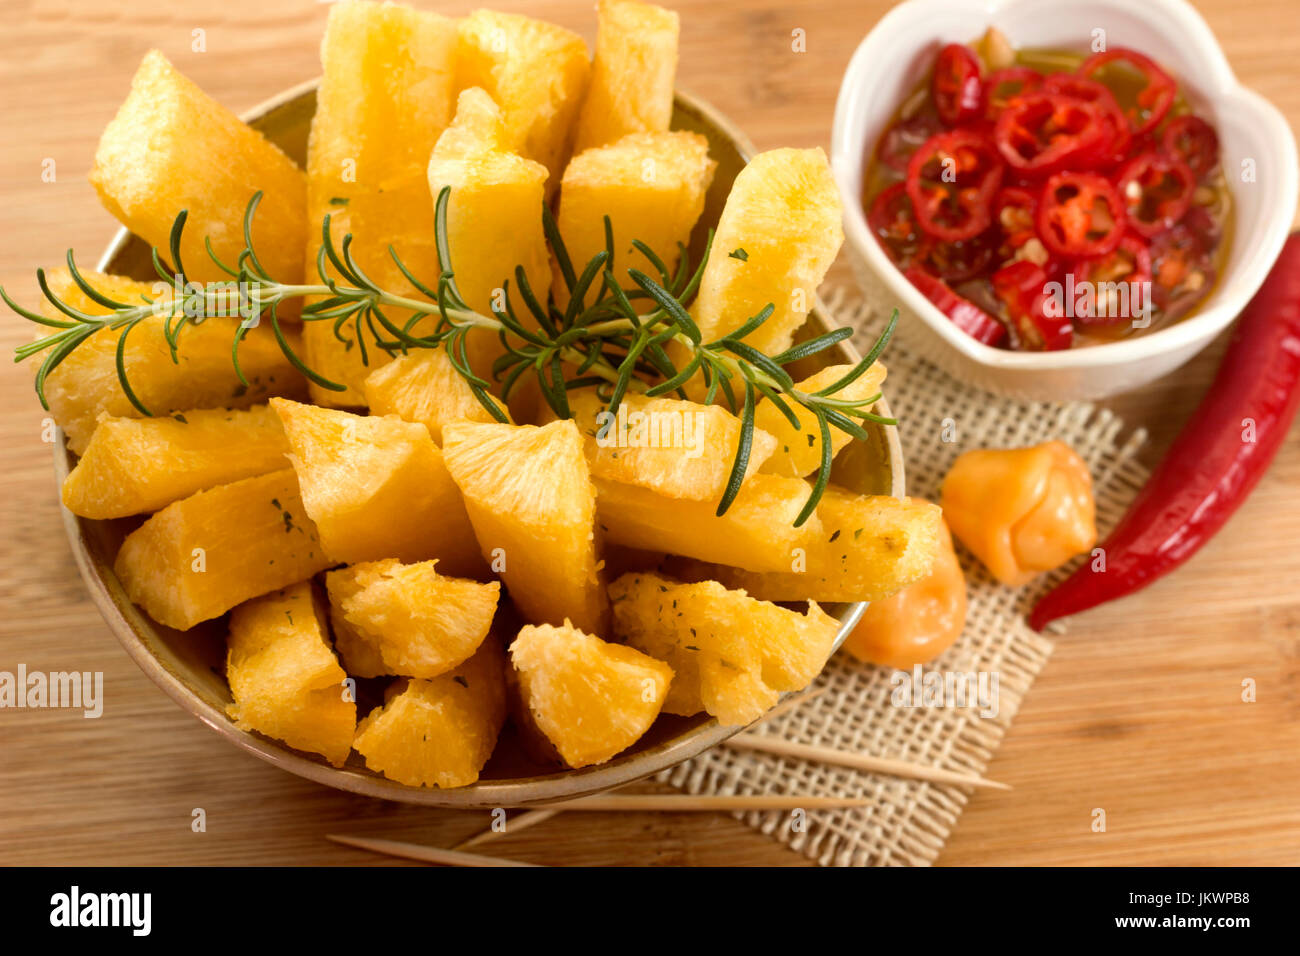 Cibo brasiliano "mandioca" frita. Fritte radice di manioca. Foto Stock